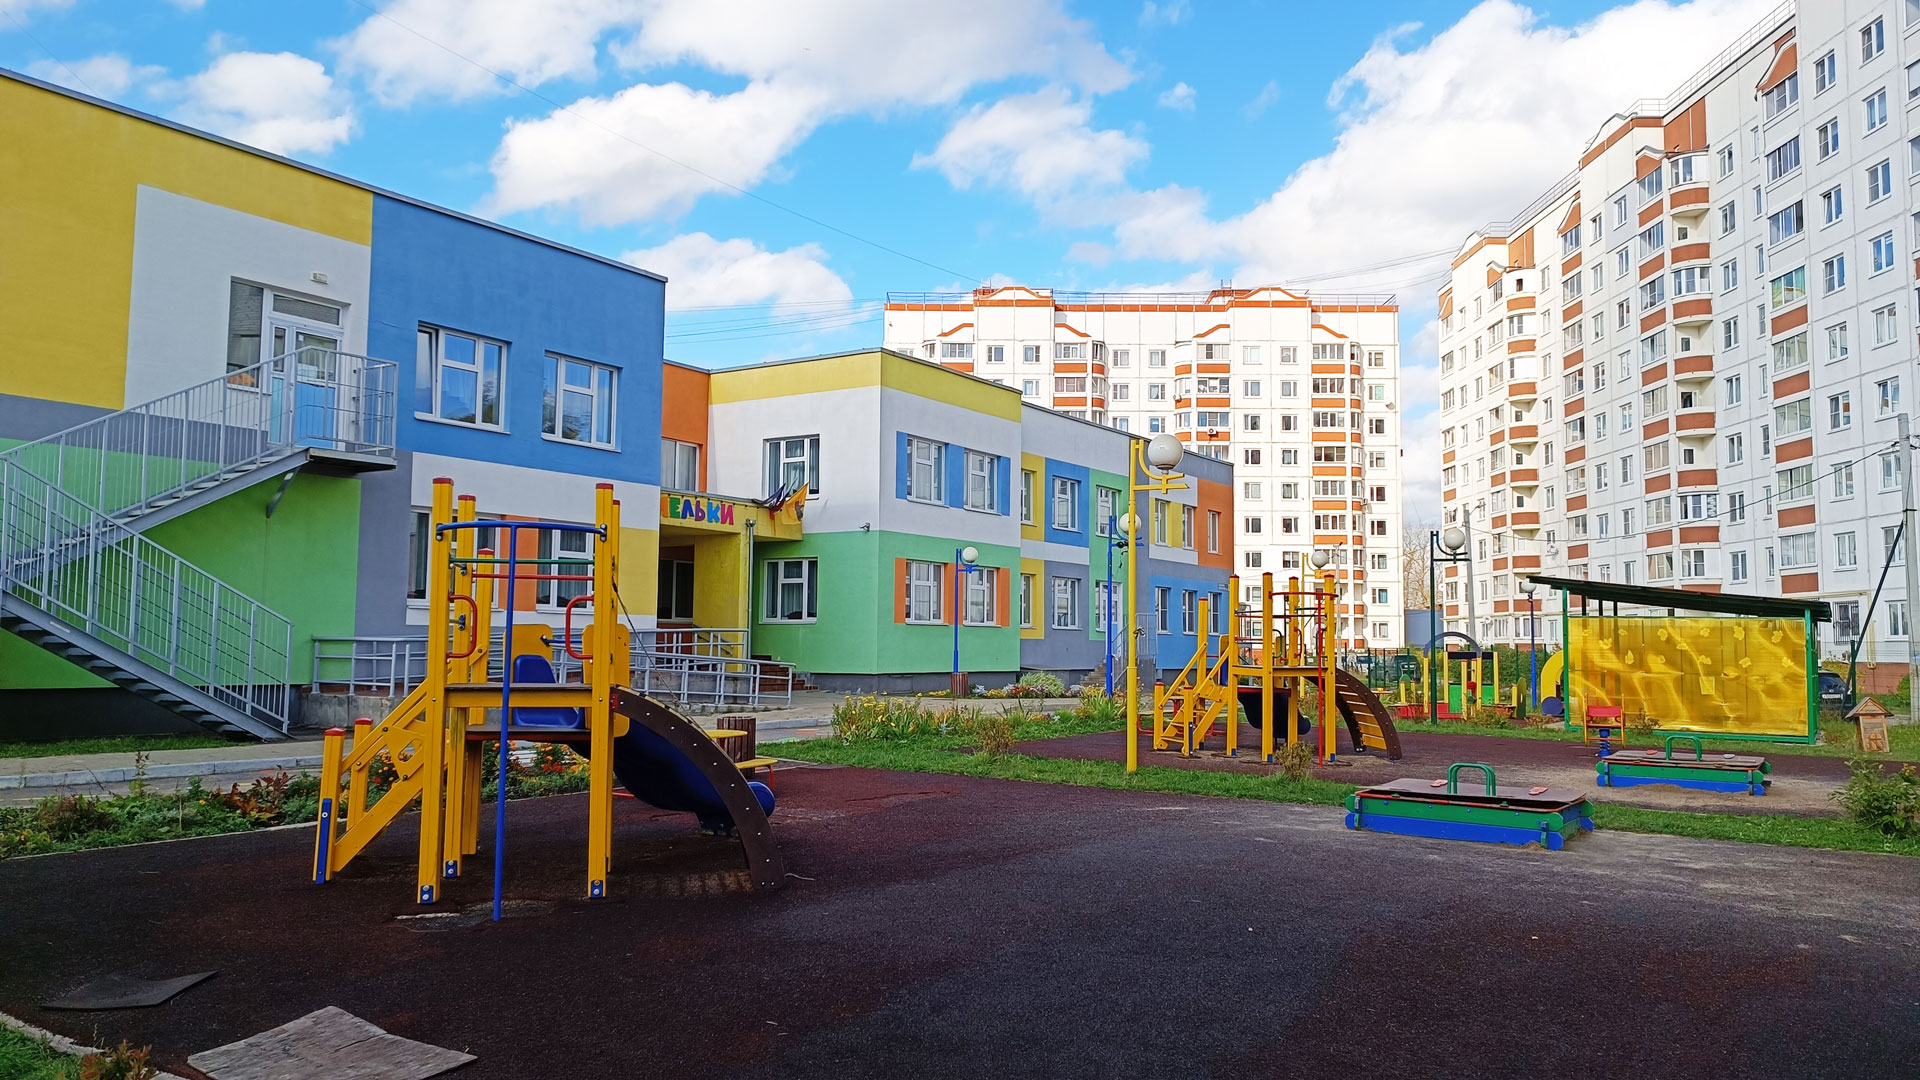 Детский сад 98 Ярославль: общий вид здания.